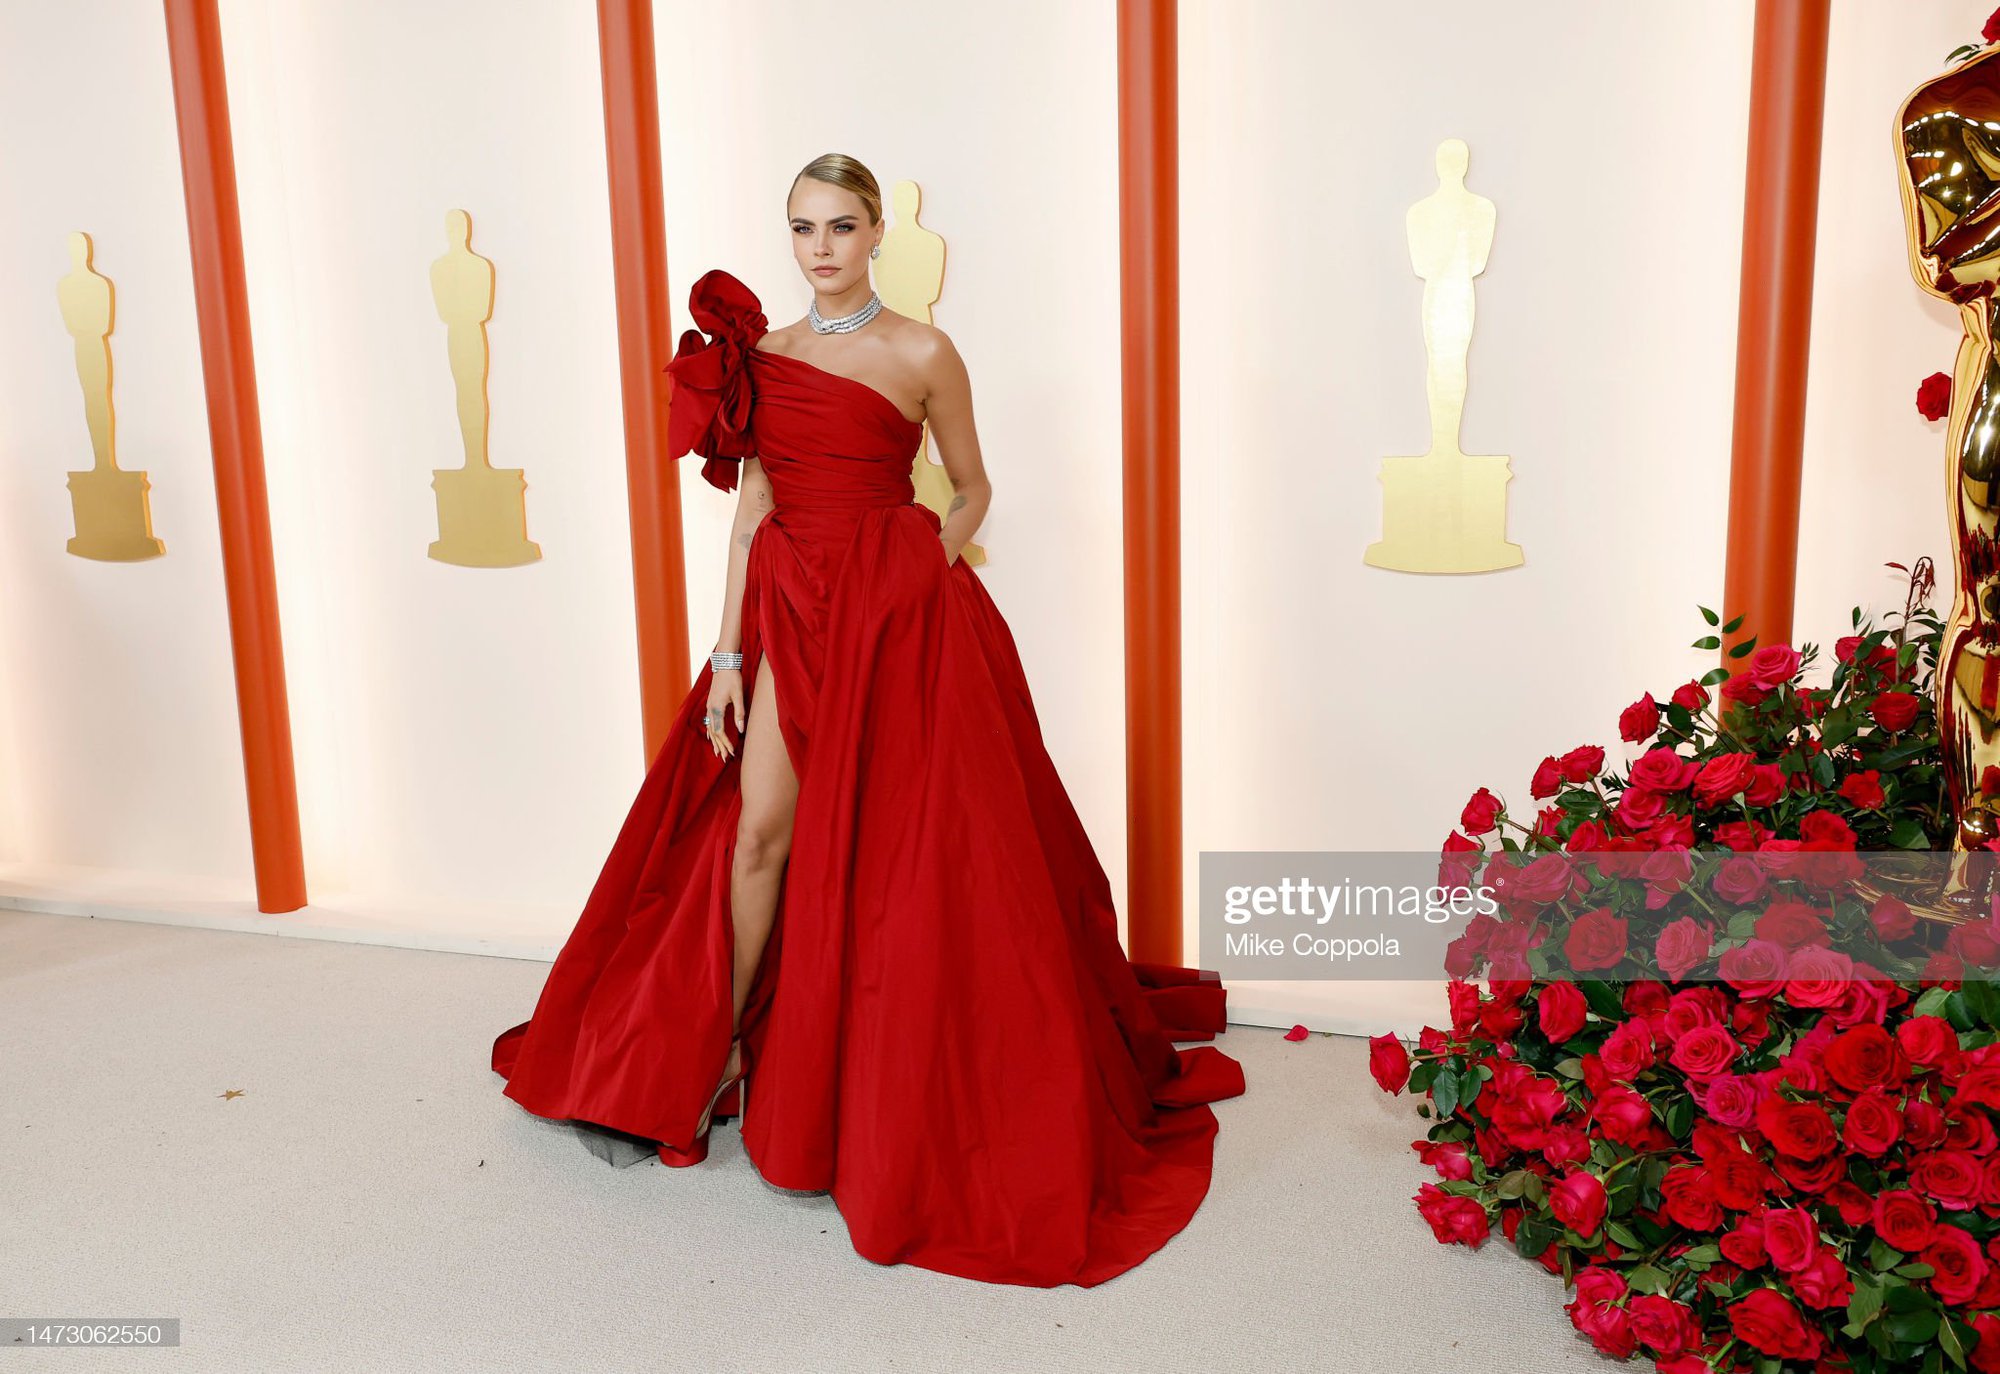 Mỹ nhân Oscar qua ống kính hung thần Getty Images: Phạm Băng Băng - Cara Delevingne đẹp phát choáng, Lady Gaga hóa thảm họa - Ảnh 8.